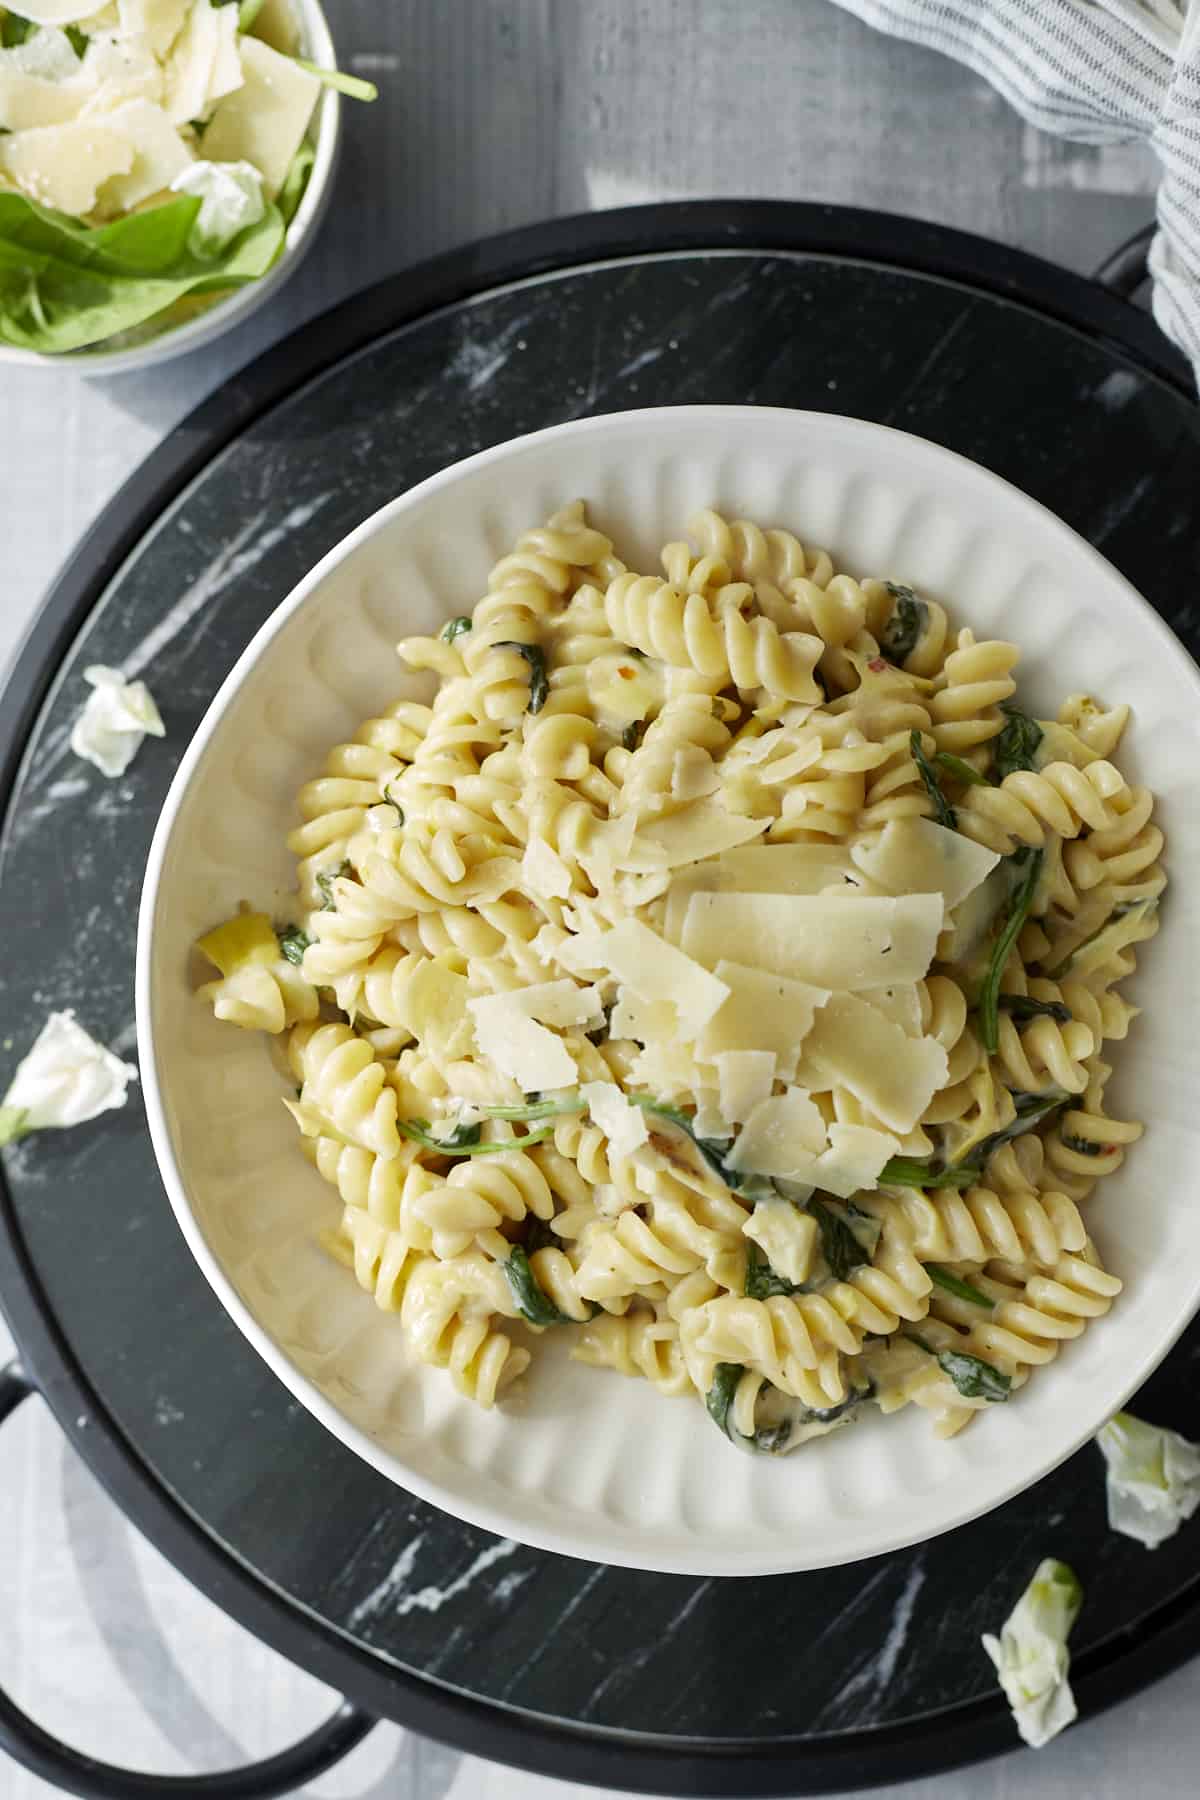 One Pot Spinach and Artichoke Pasta (No-boil pasta recipe)